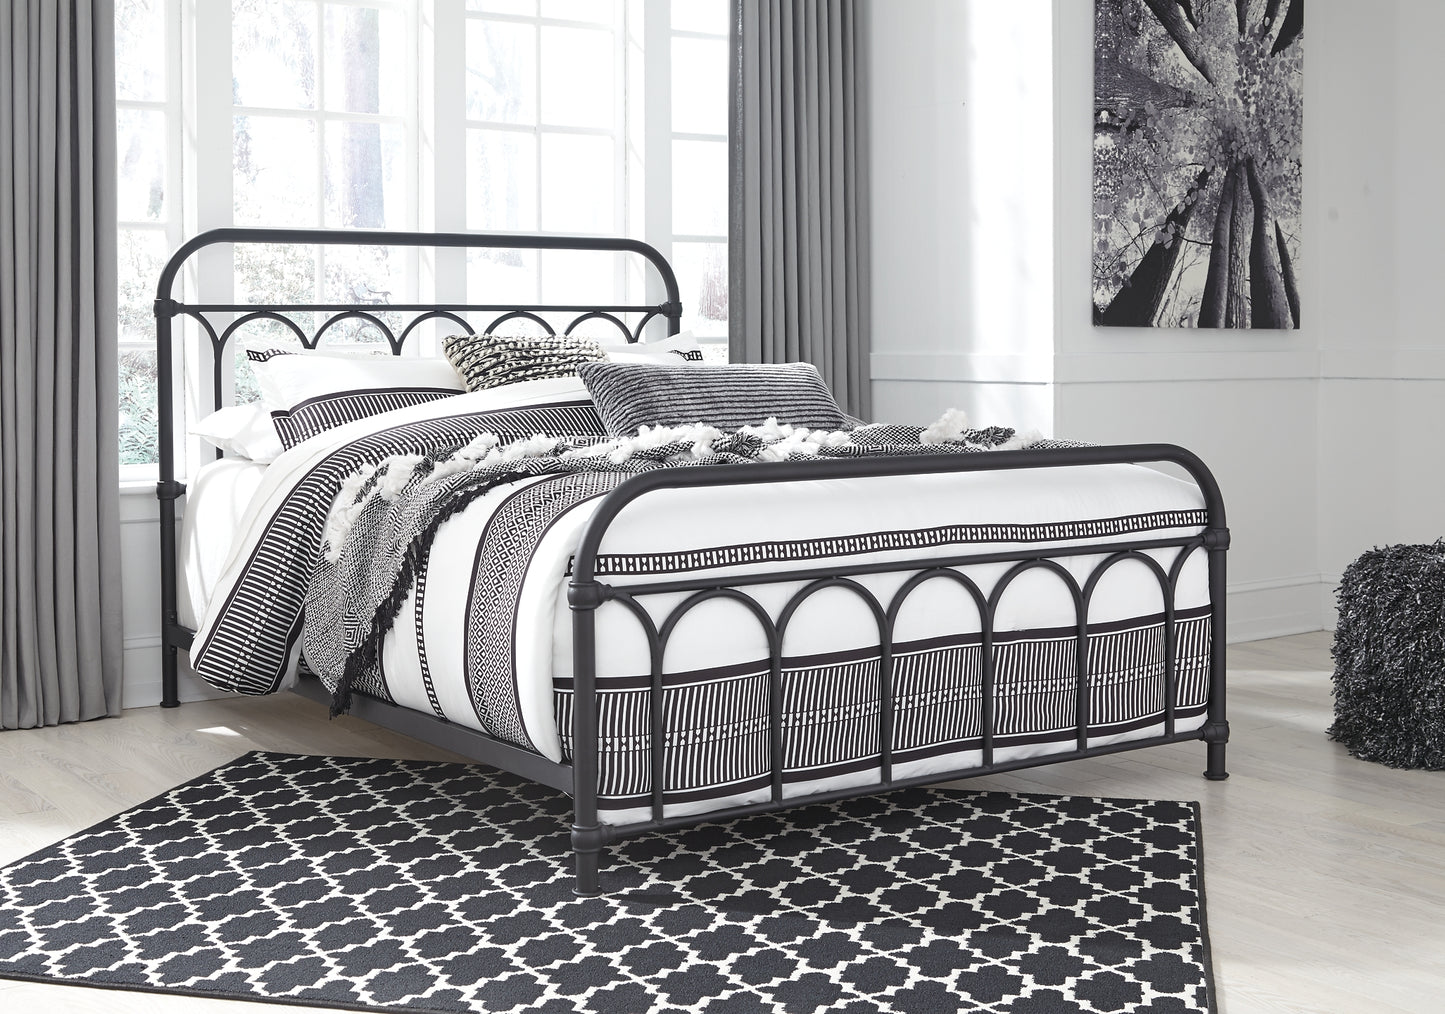 Nashburg Queen Metal Bed with Mattress JB's Furniture Furniture, Bedroom, Accessories